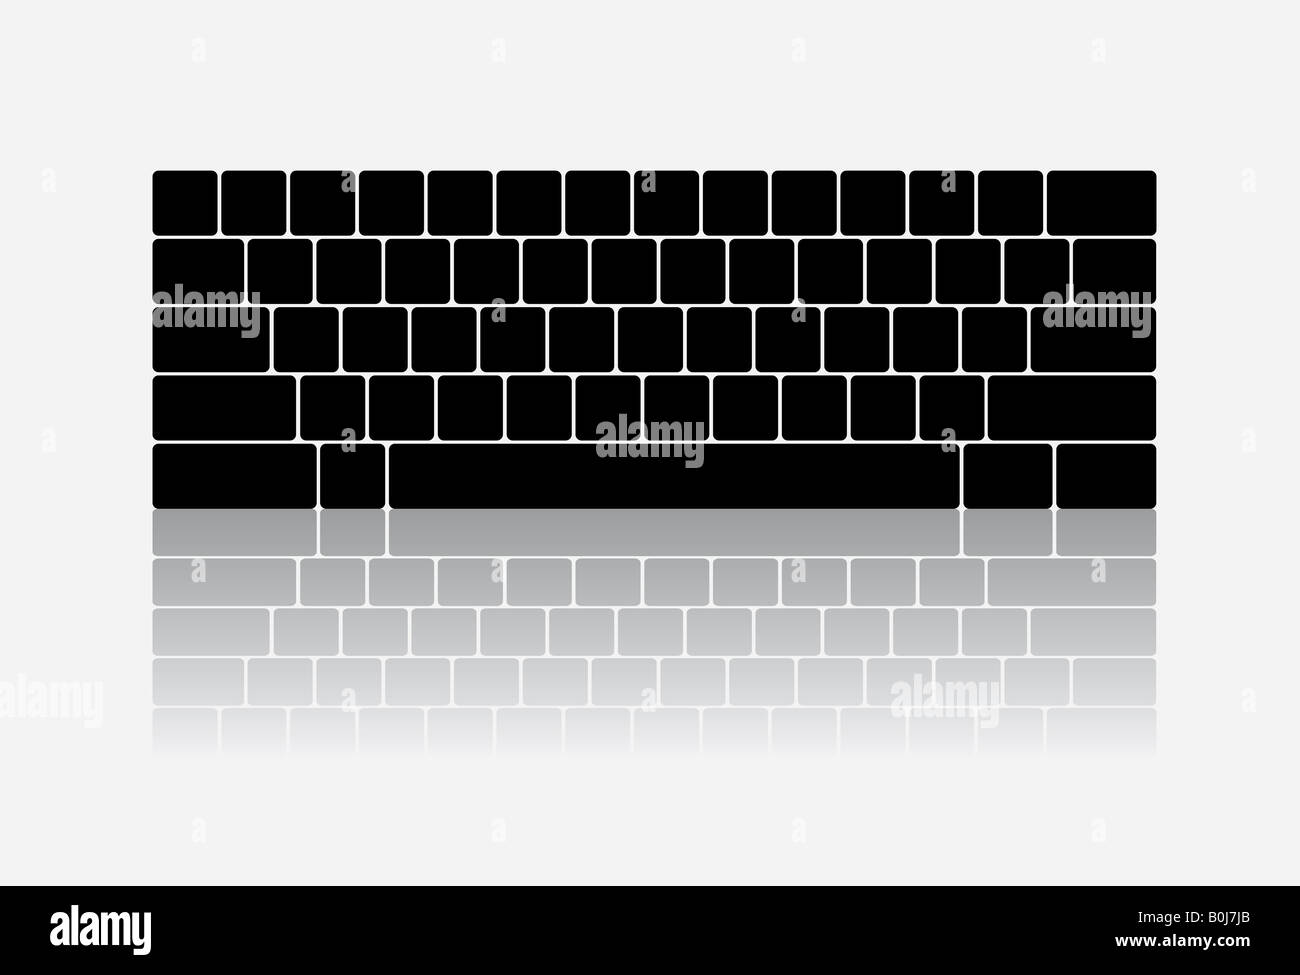 Keyboard illustration reflection on ground Stock Photo